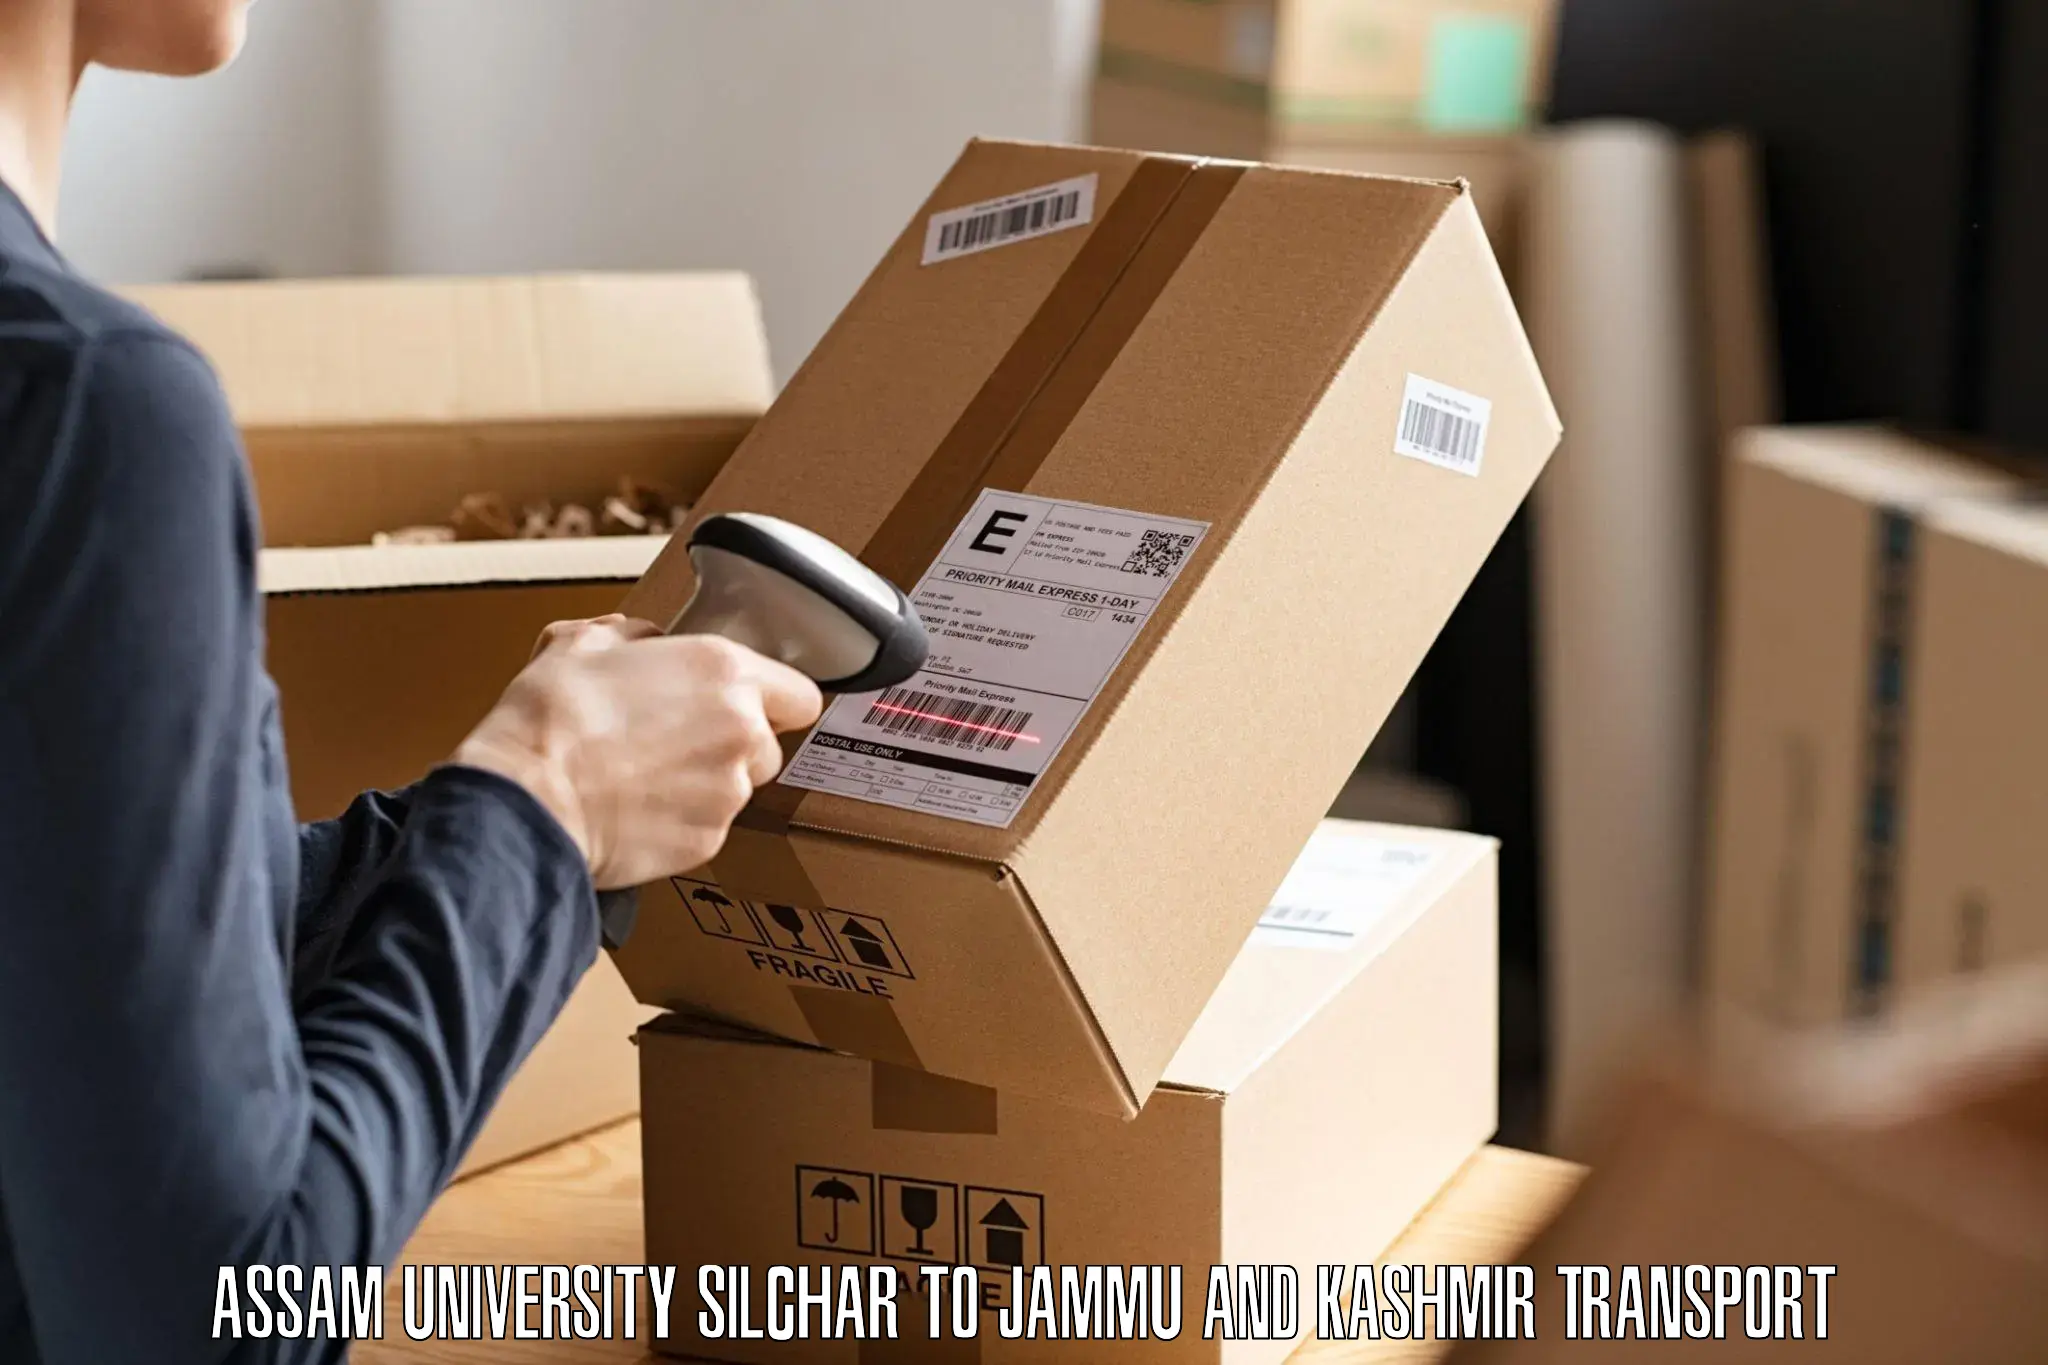 Nearby transport service Assam University Silchar to Jakh